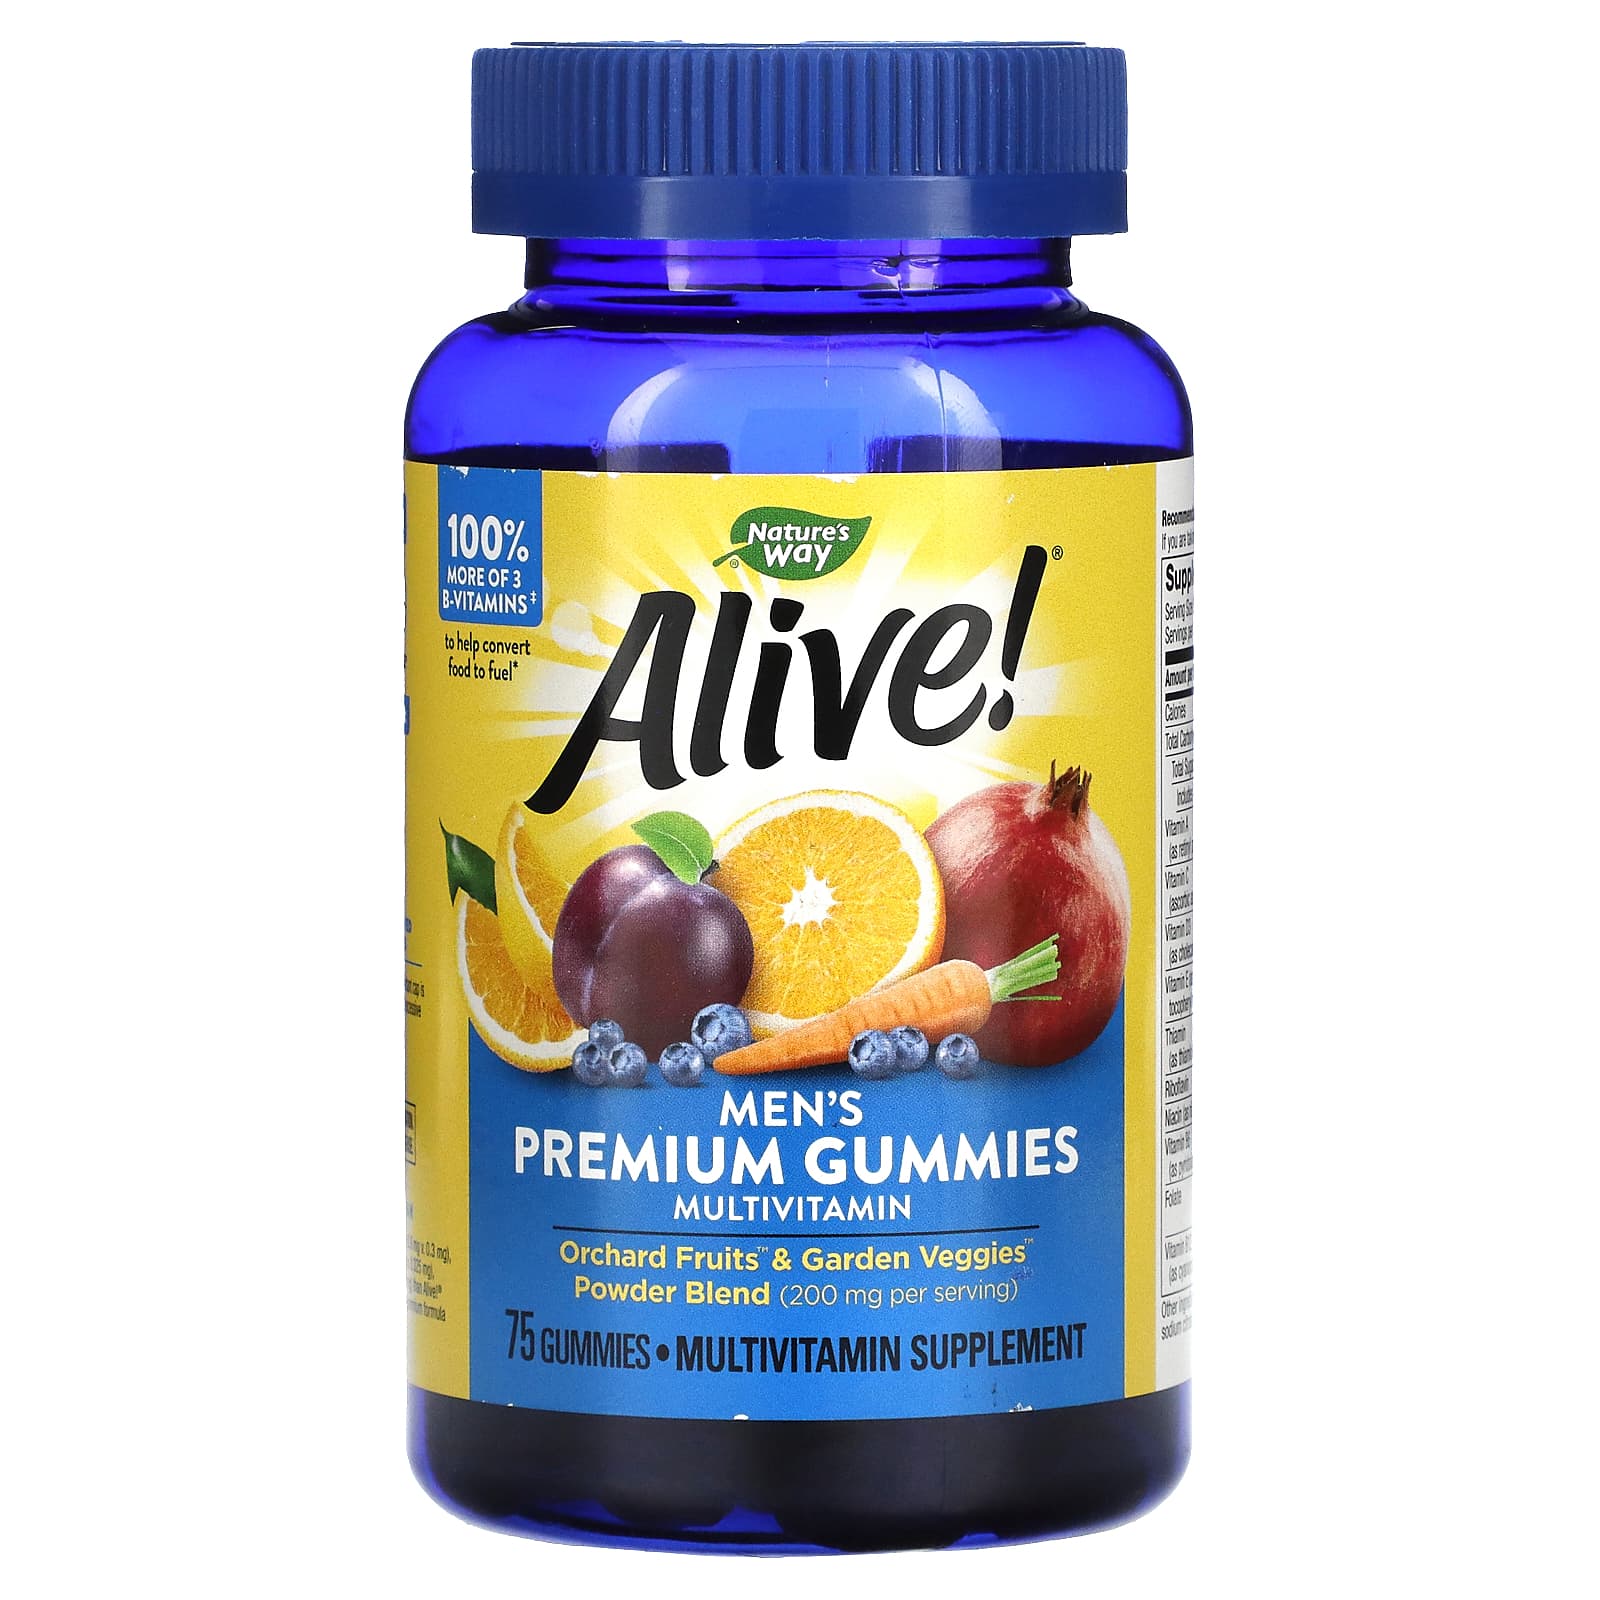 Витамины для мужчин после 50 отзывы. Alive витамины Premium Gummies. Nature's way, Alive! Жевательные витамины для женщин. Натурес Вэй витамины для женщин. Аливе витамины для женщин 50.